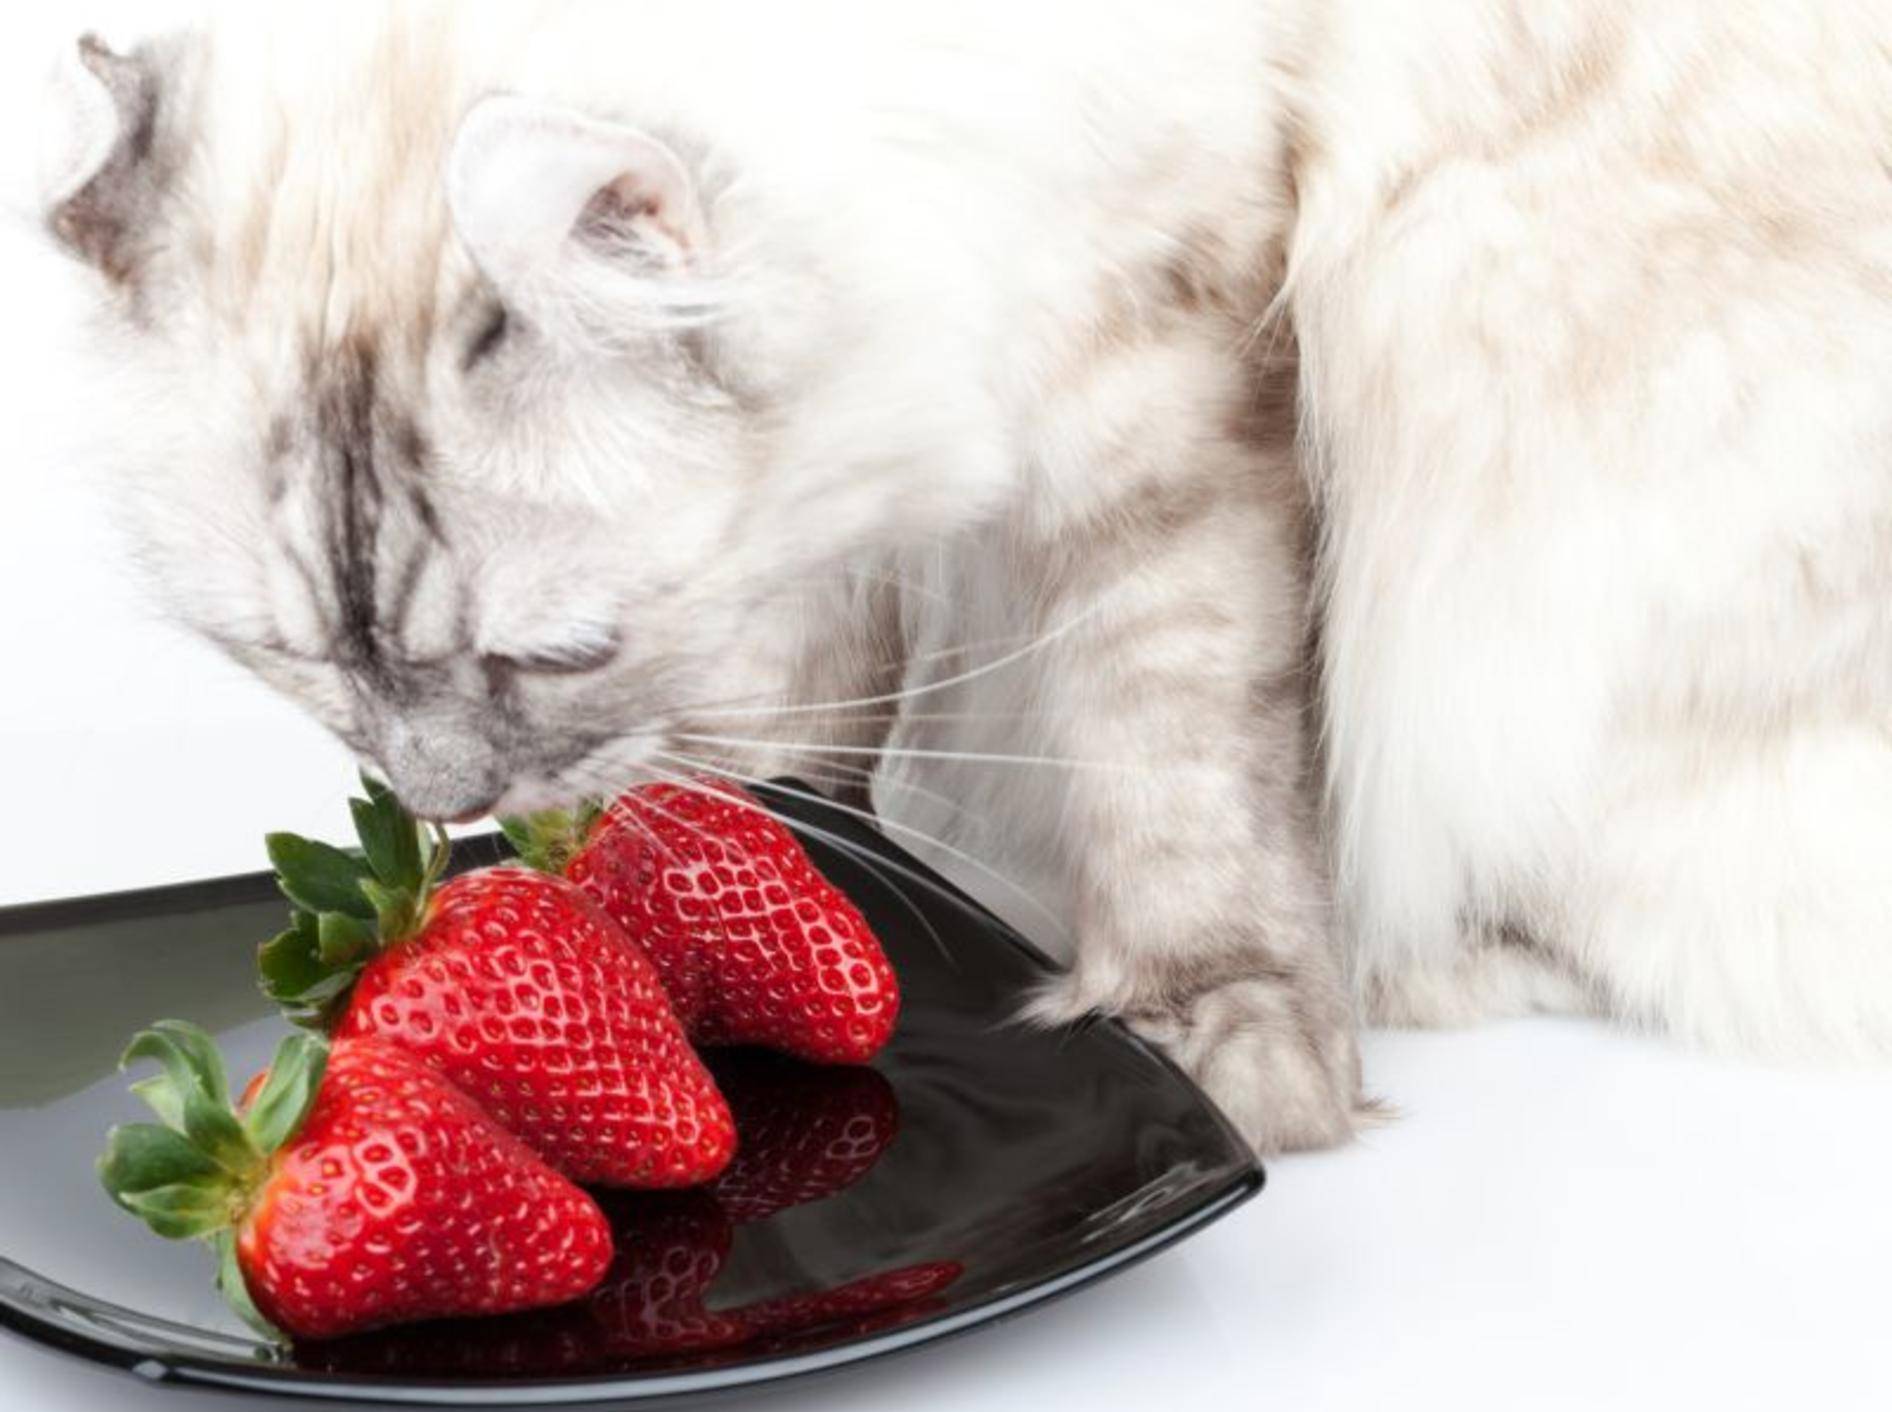 Sind Erdbeeren und andere Obstsorten als Katzensnacks geeignet? – Shutterstock / Eugene Sergeev